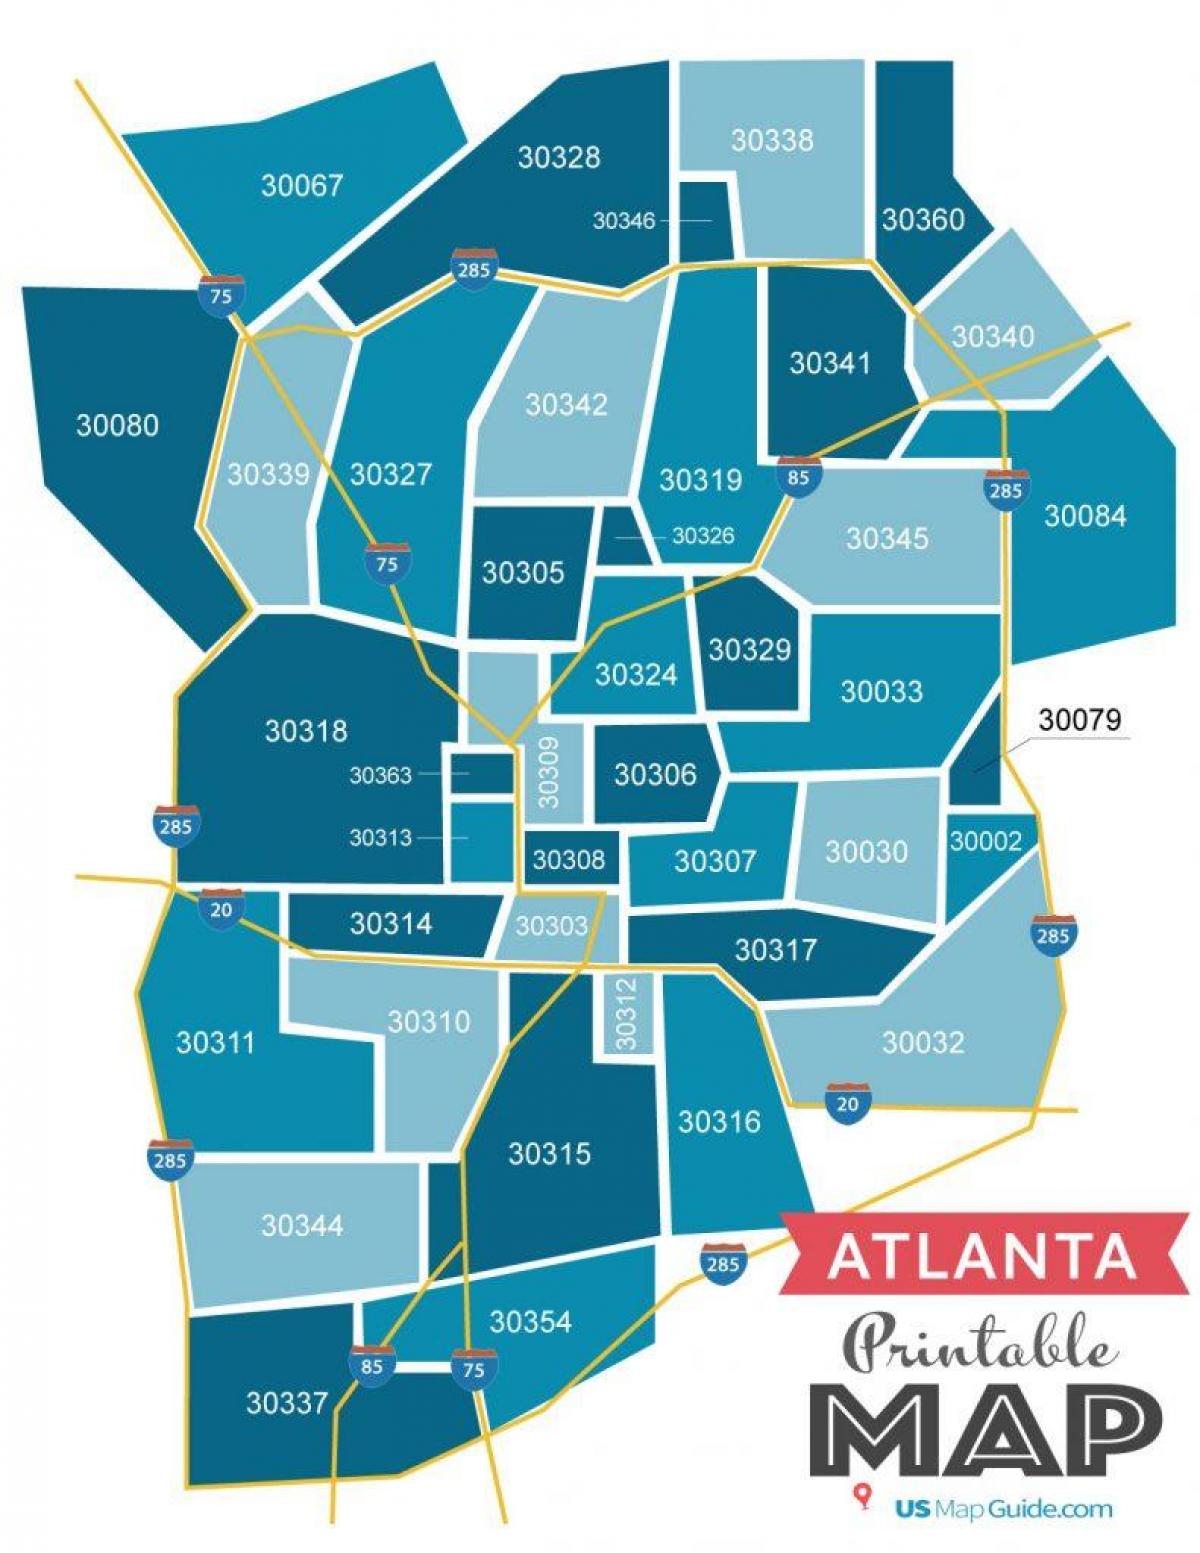 Mappa dei codici postali di Atlanta